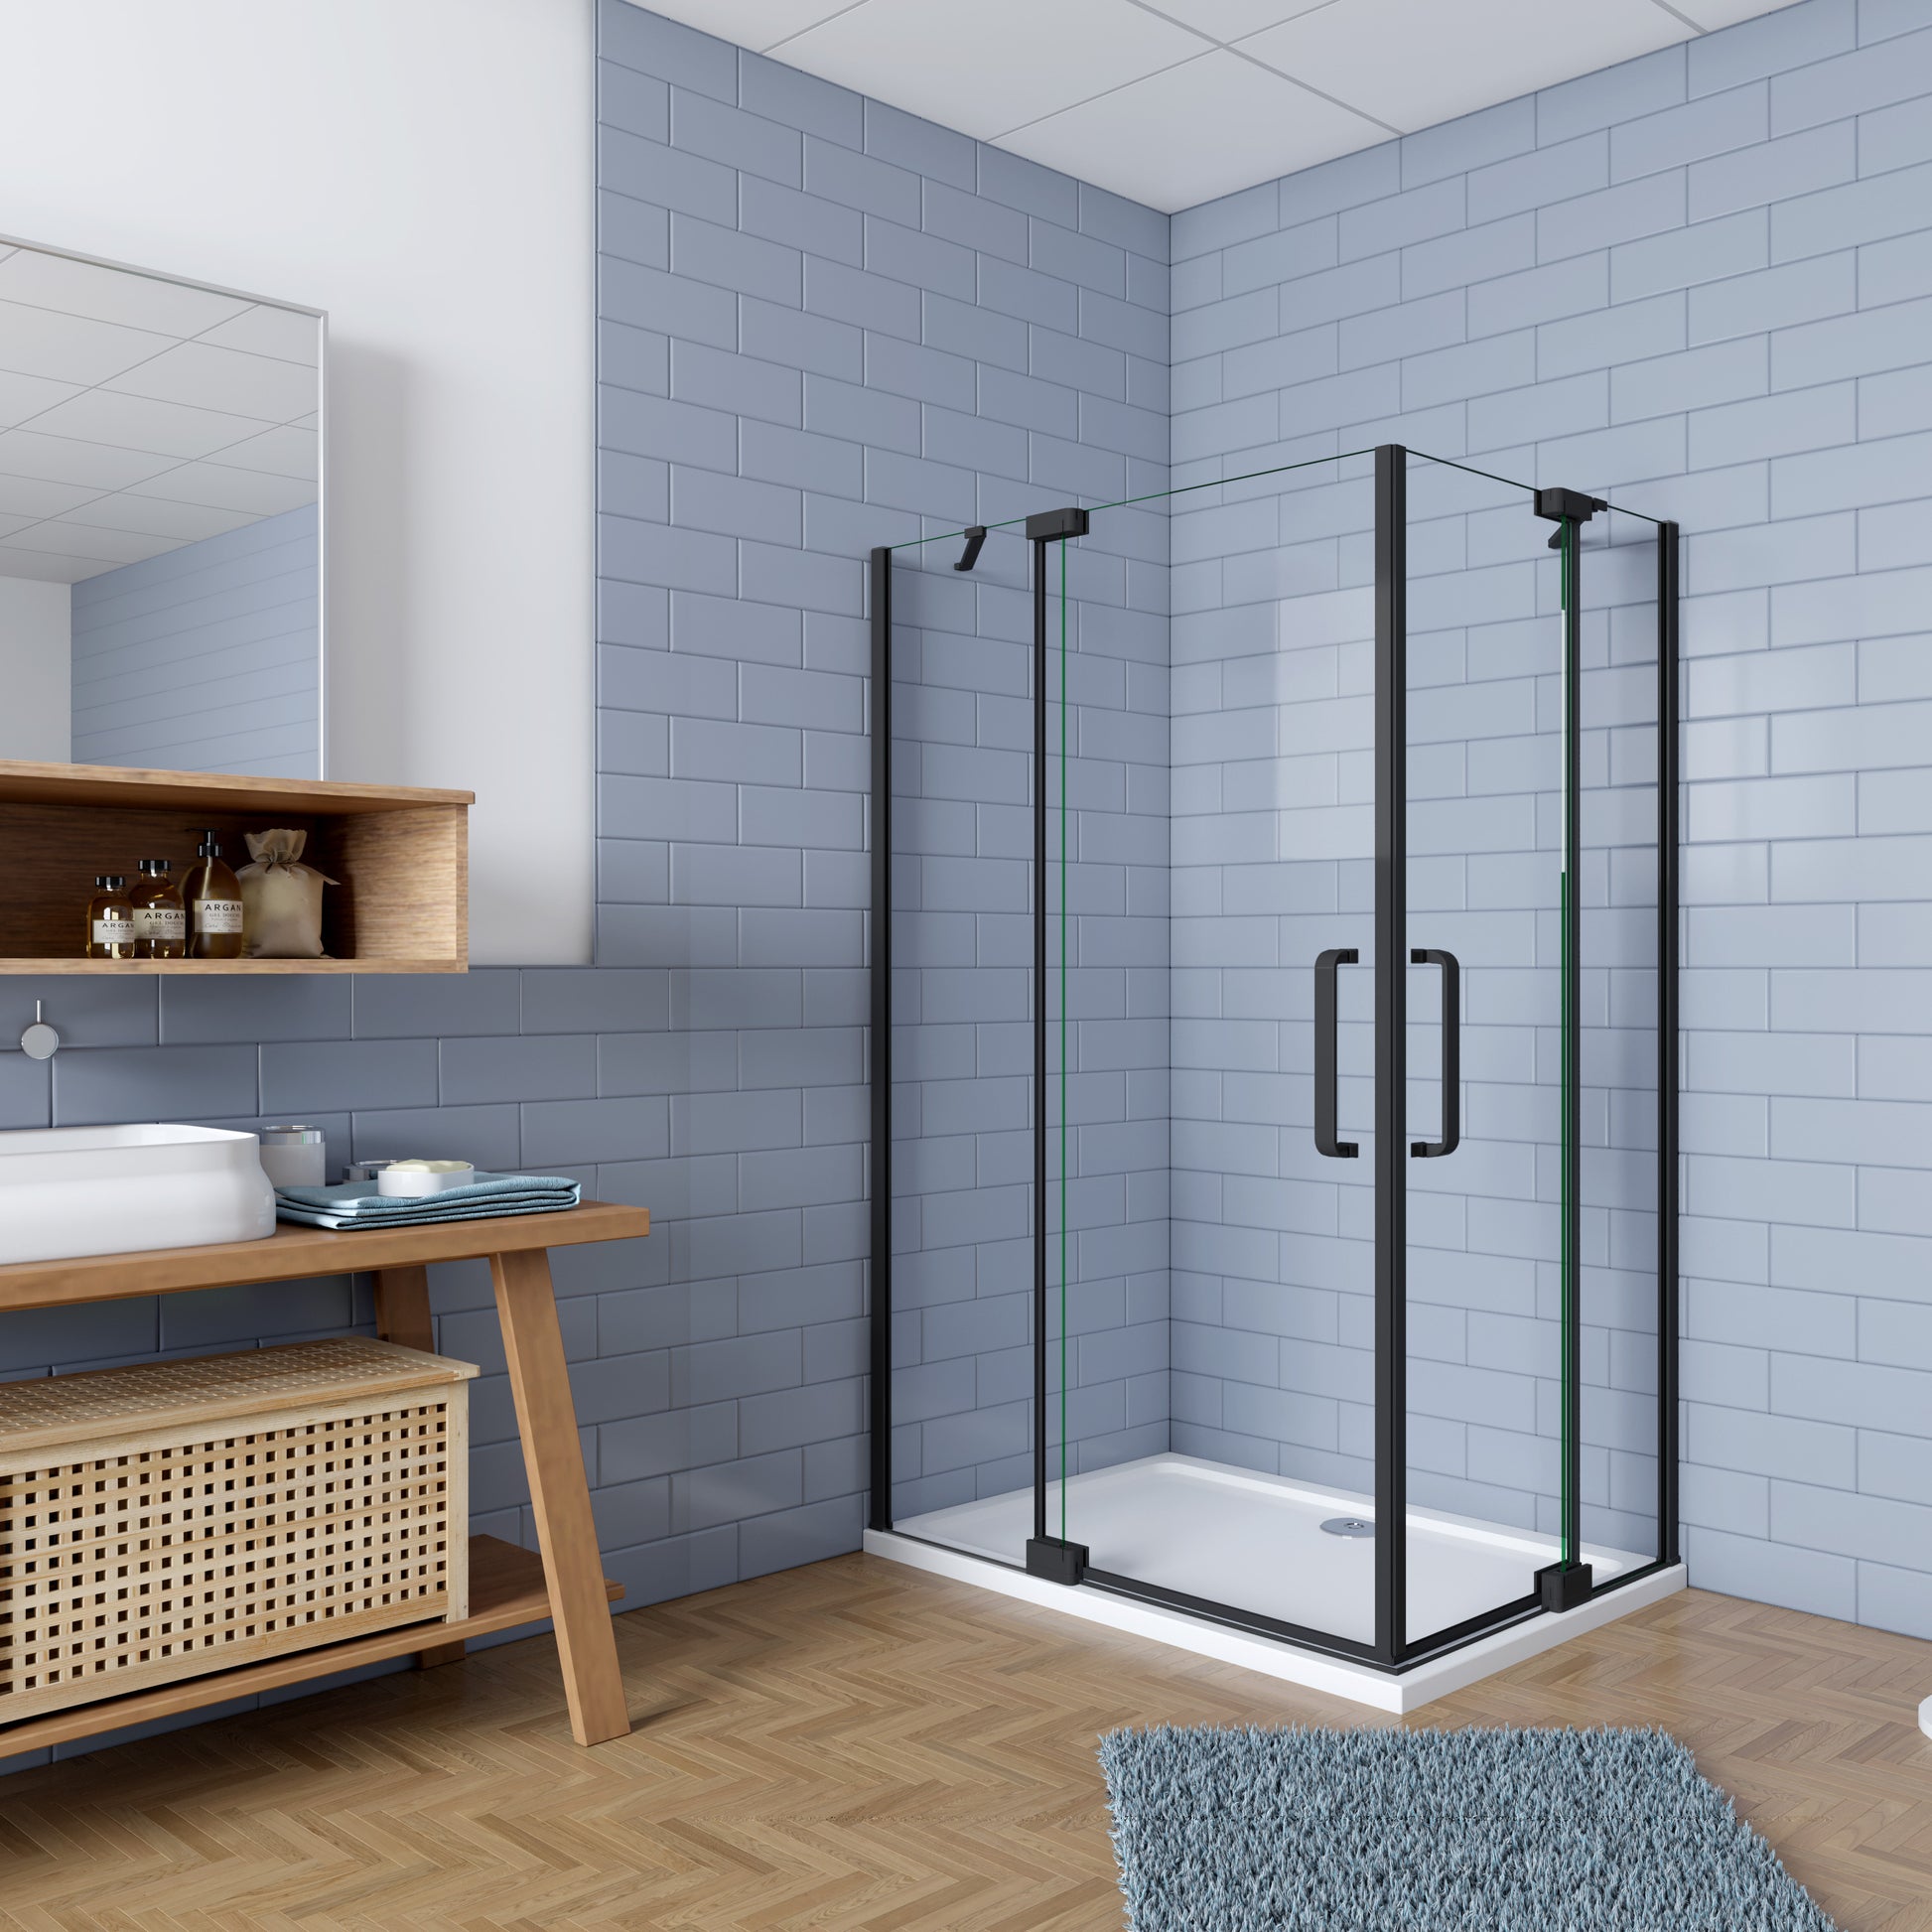 Mampara ducha Pantalla baño plegable puerta de Aica diferentes tamaños –  Aica Sanitarios España